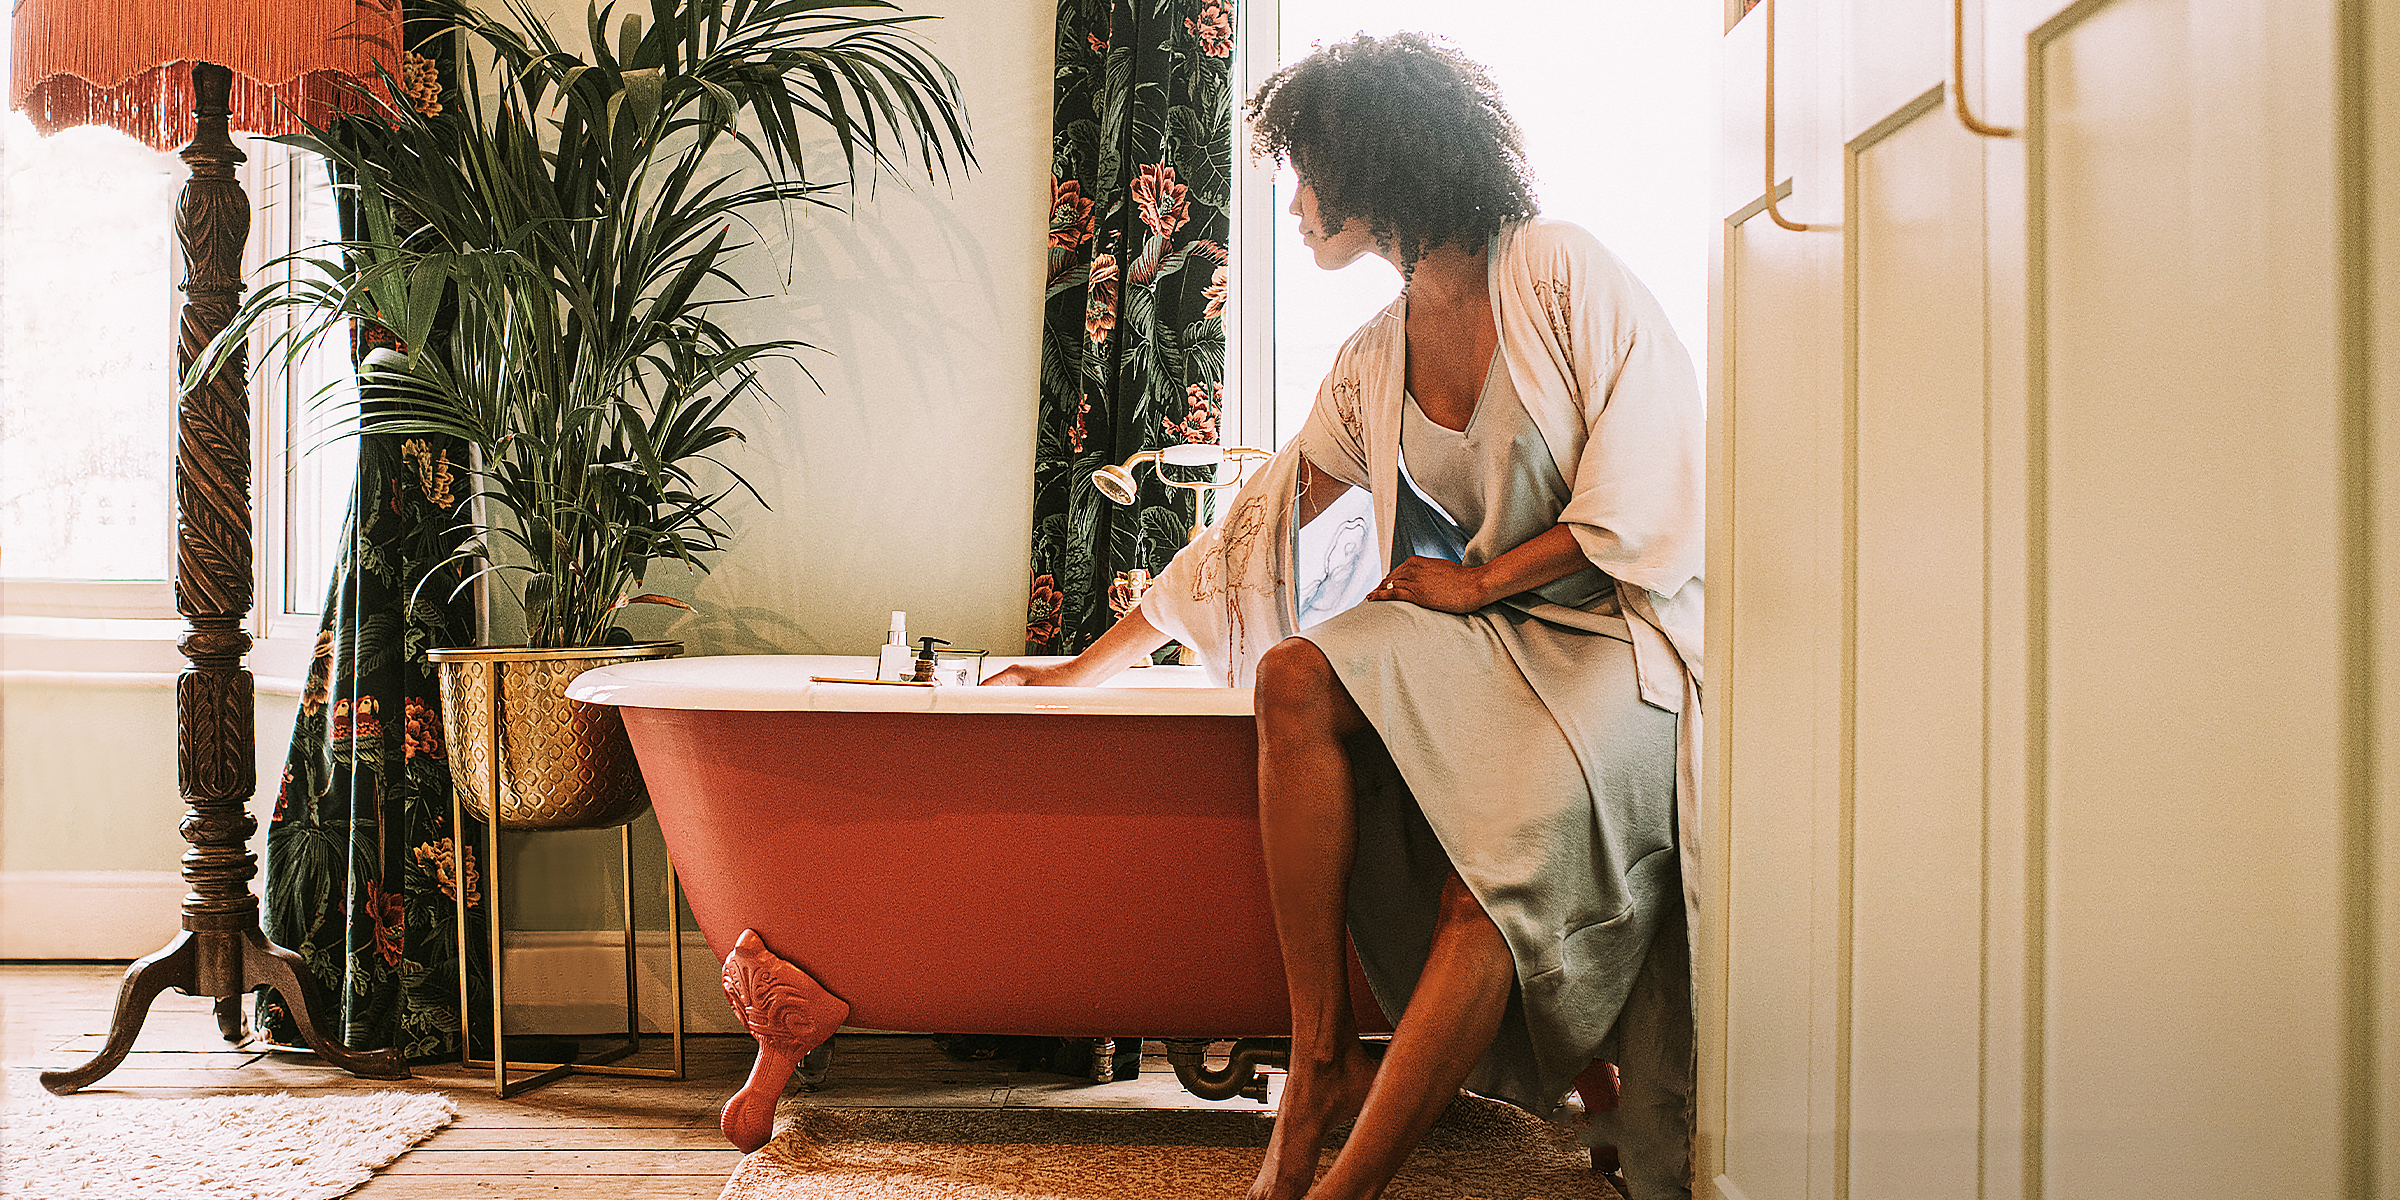 Eine Frau, die auf einer Badewanne sitzt | Quelle: Getty Images